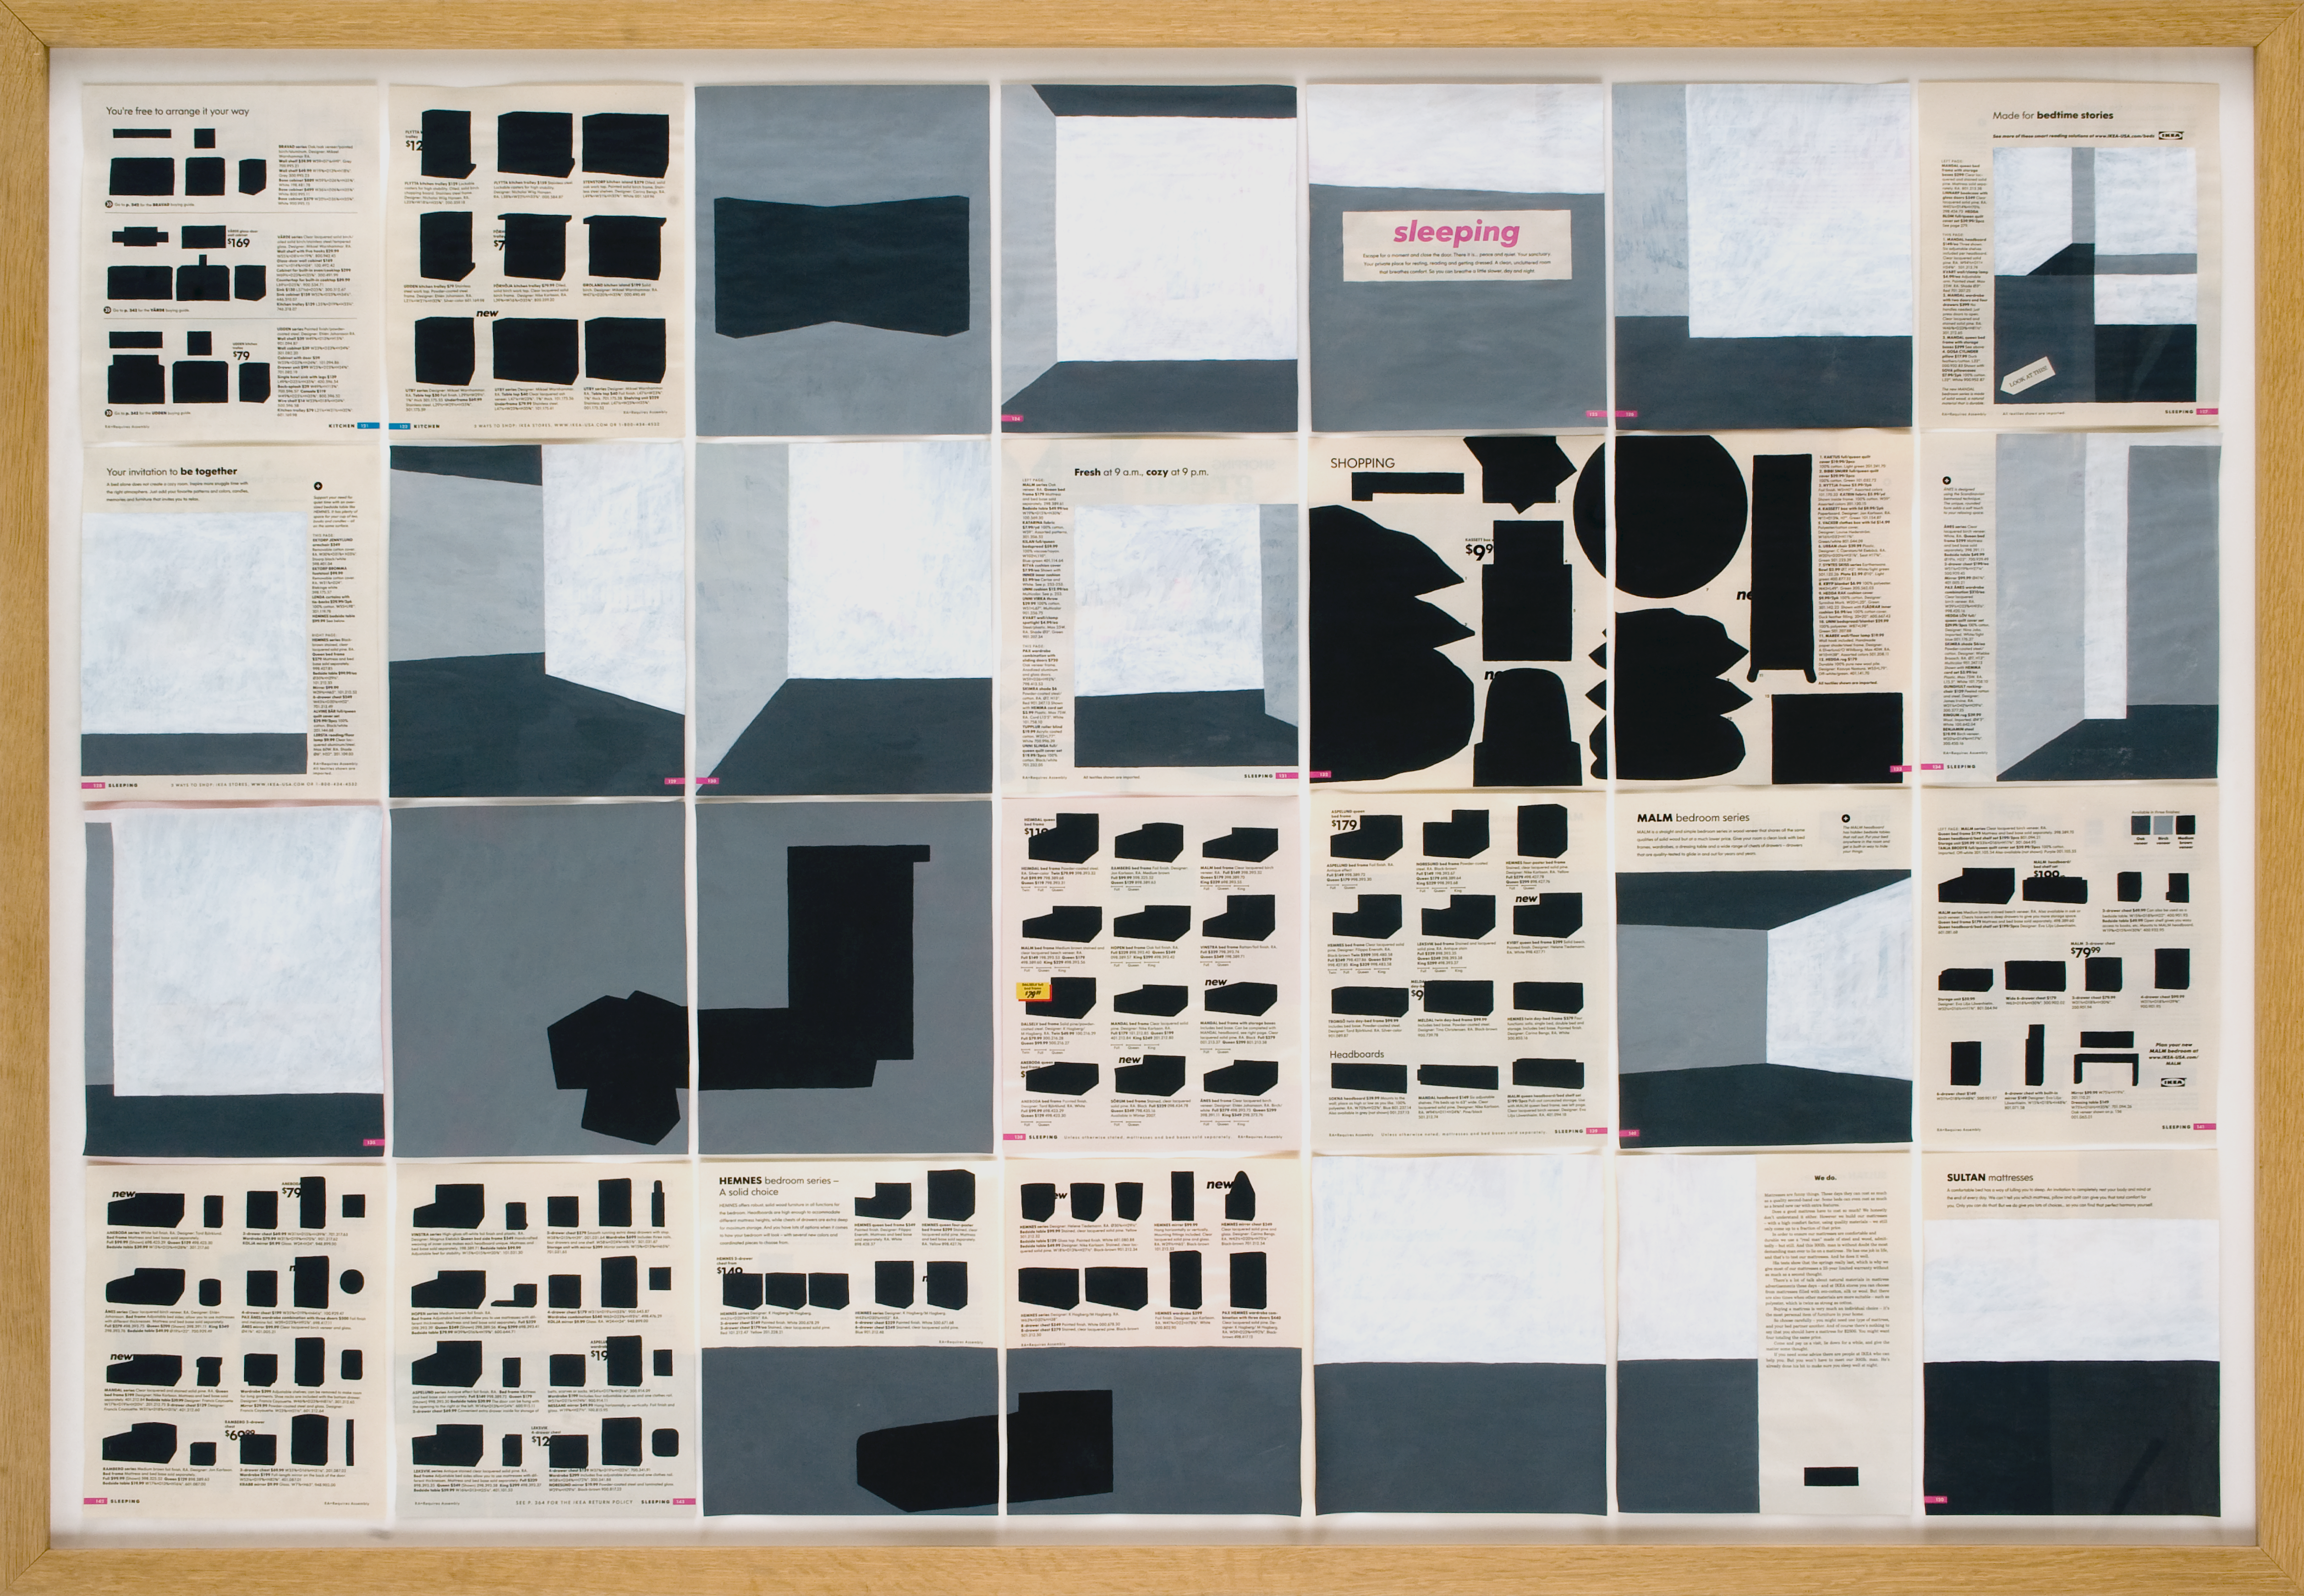 Jochen Gerner, n°5 – Sleeping, 2008_Série Home_Acrylique sur papier imprimé, 100 x 144 cm avec cadre_courtesy galerie anne barrault